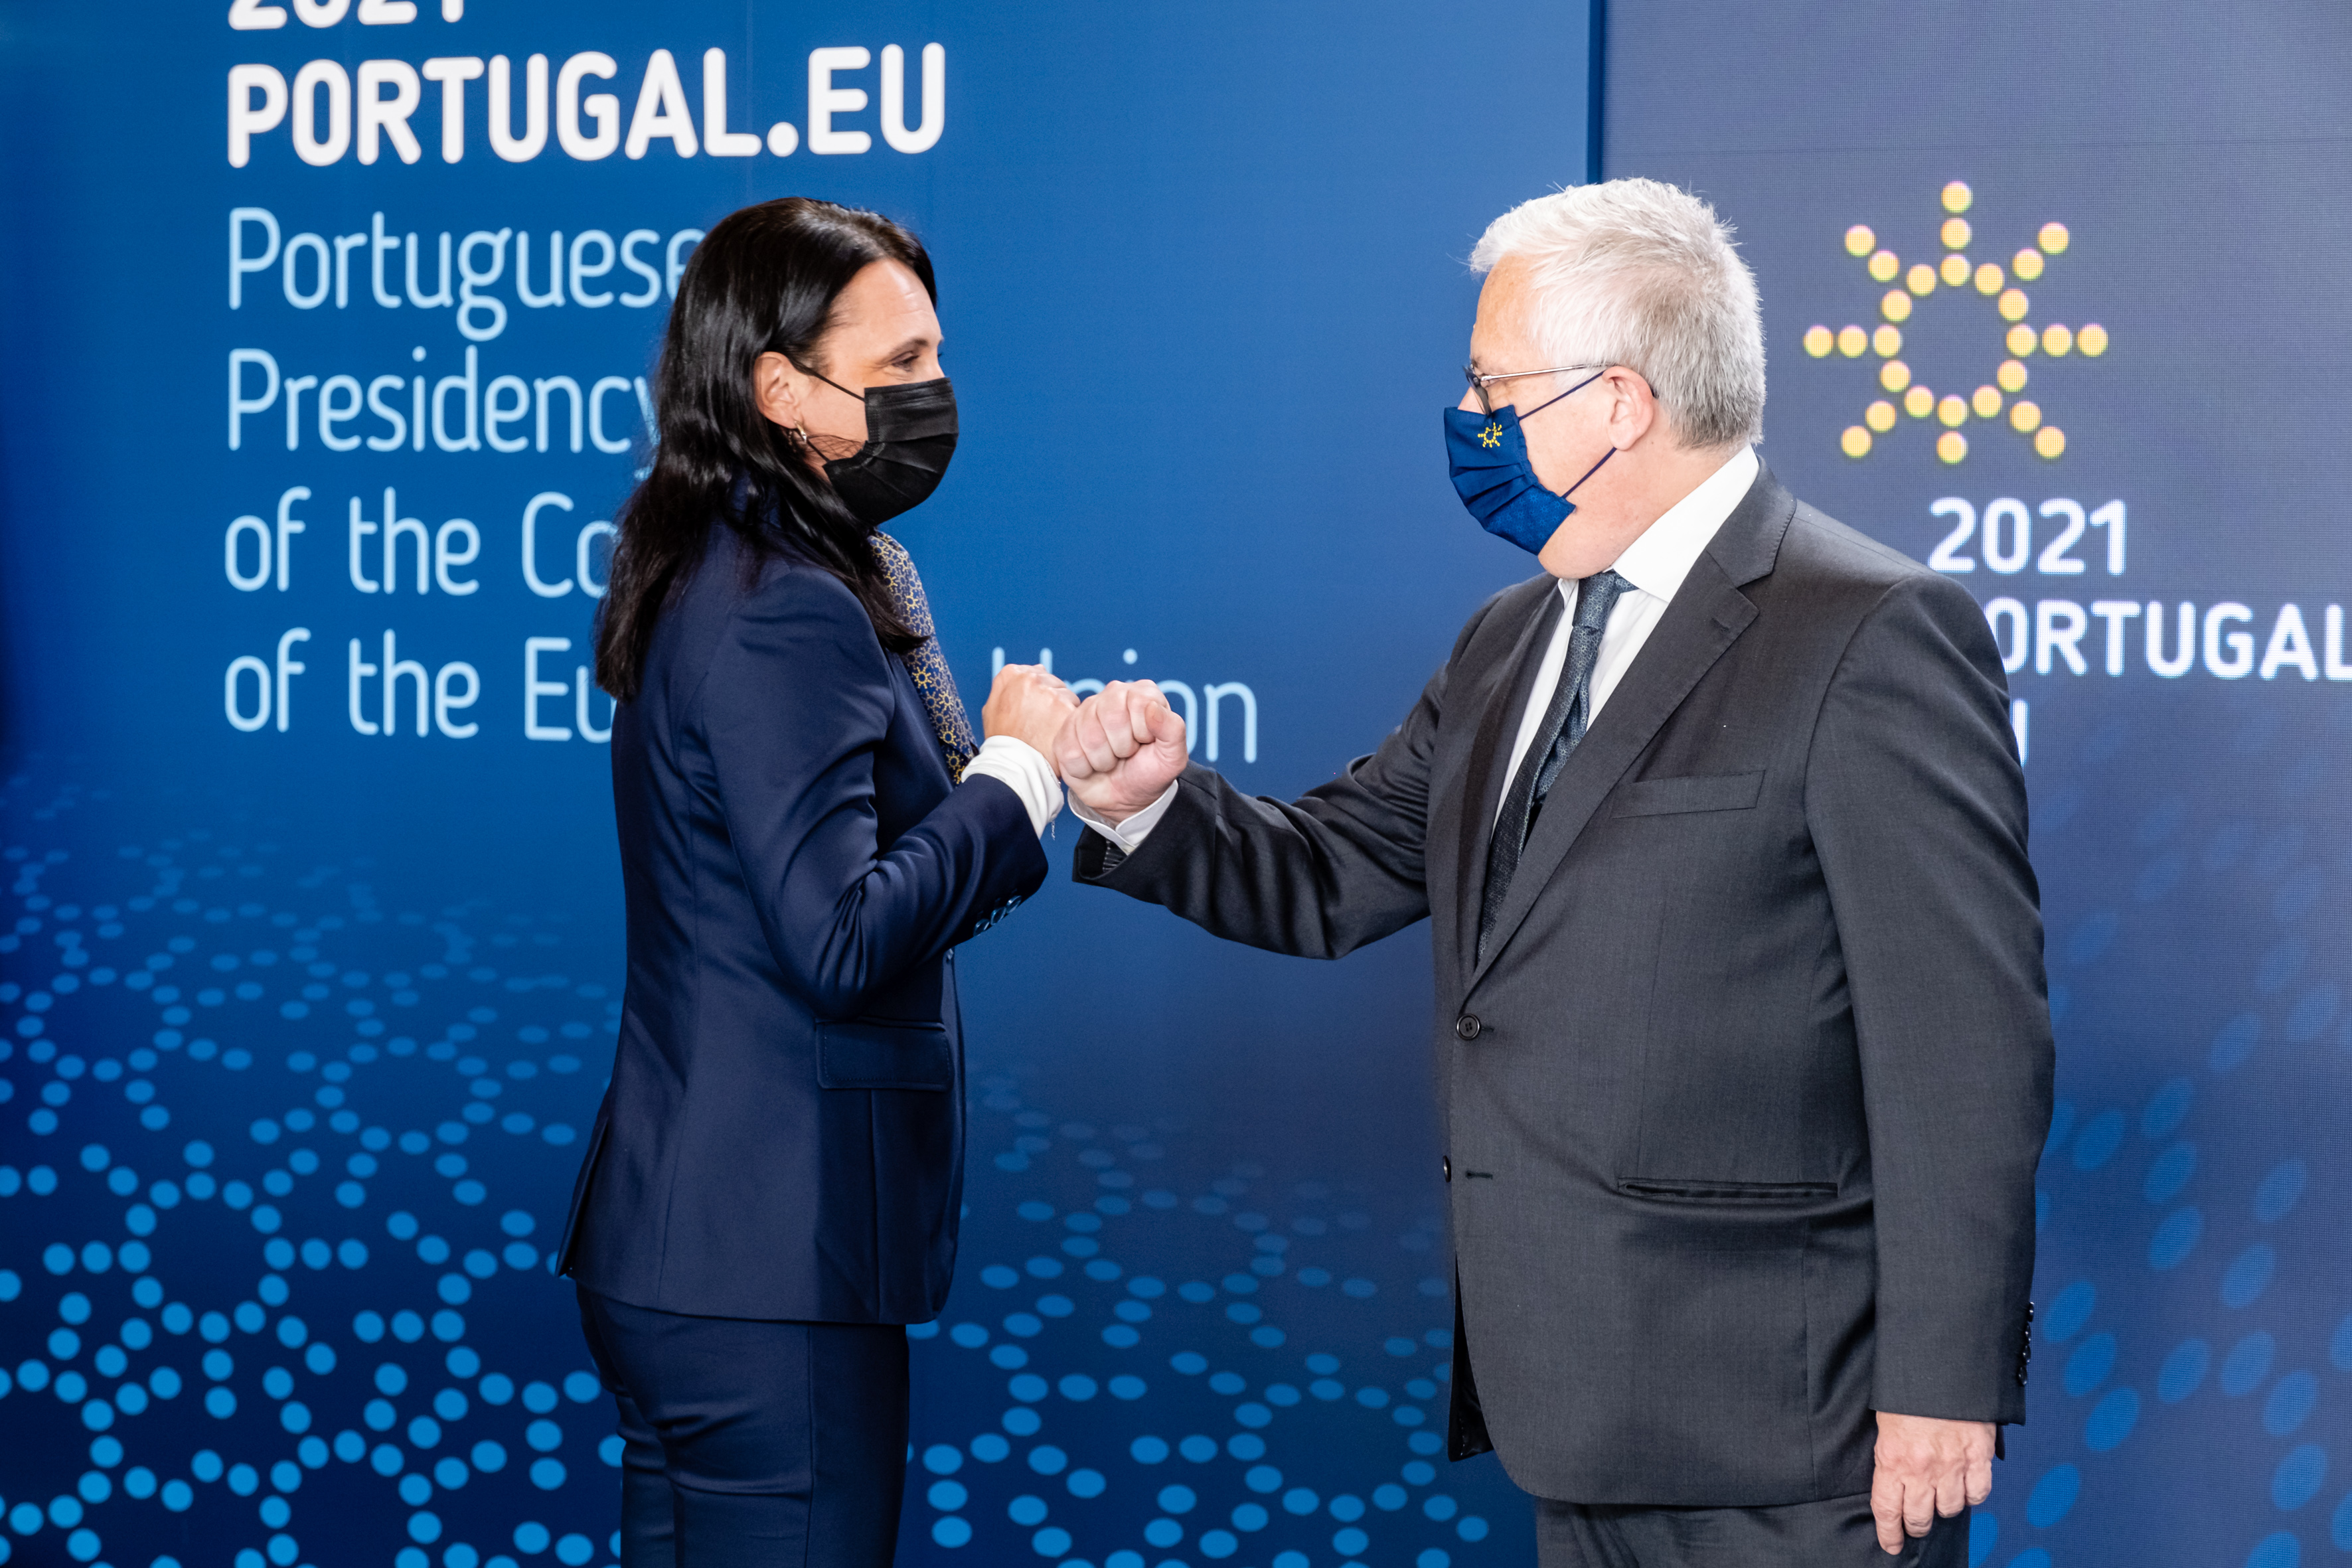 Passo importante da Presidência Portuguesa para criar a Agência Asilo